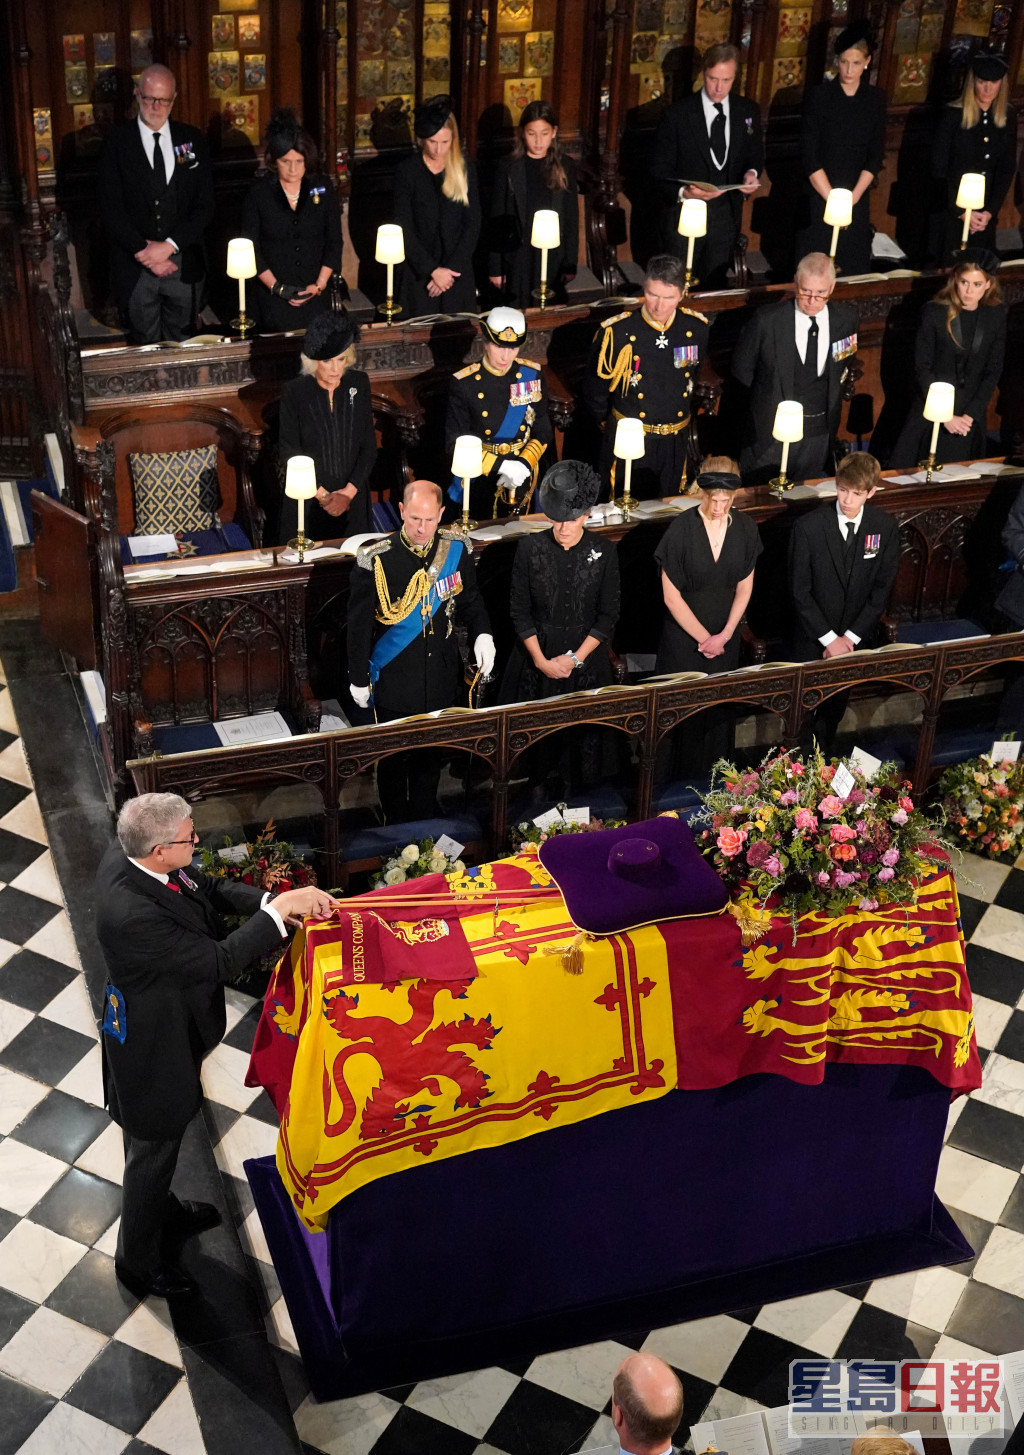 断成两截的白杖放置在女皇棺木上，随著女皇的棺木缓缓下降至圣乔治教堂的皇家墓穴。路透